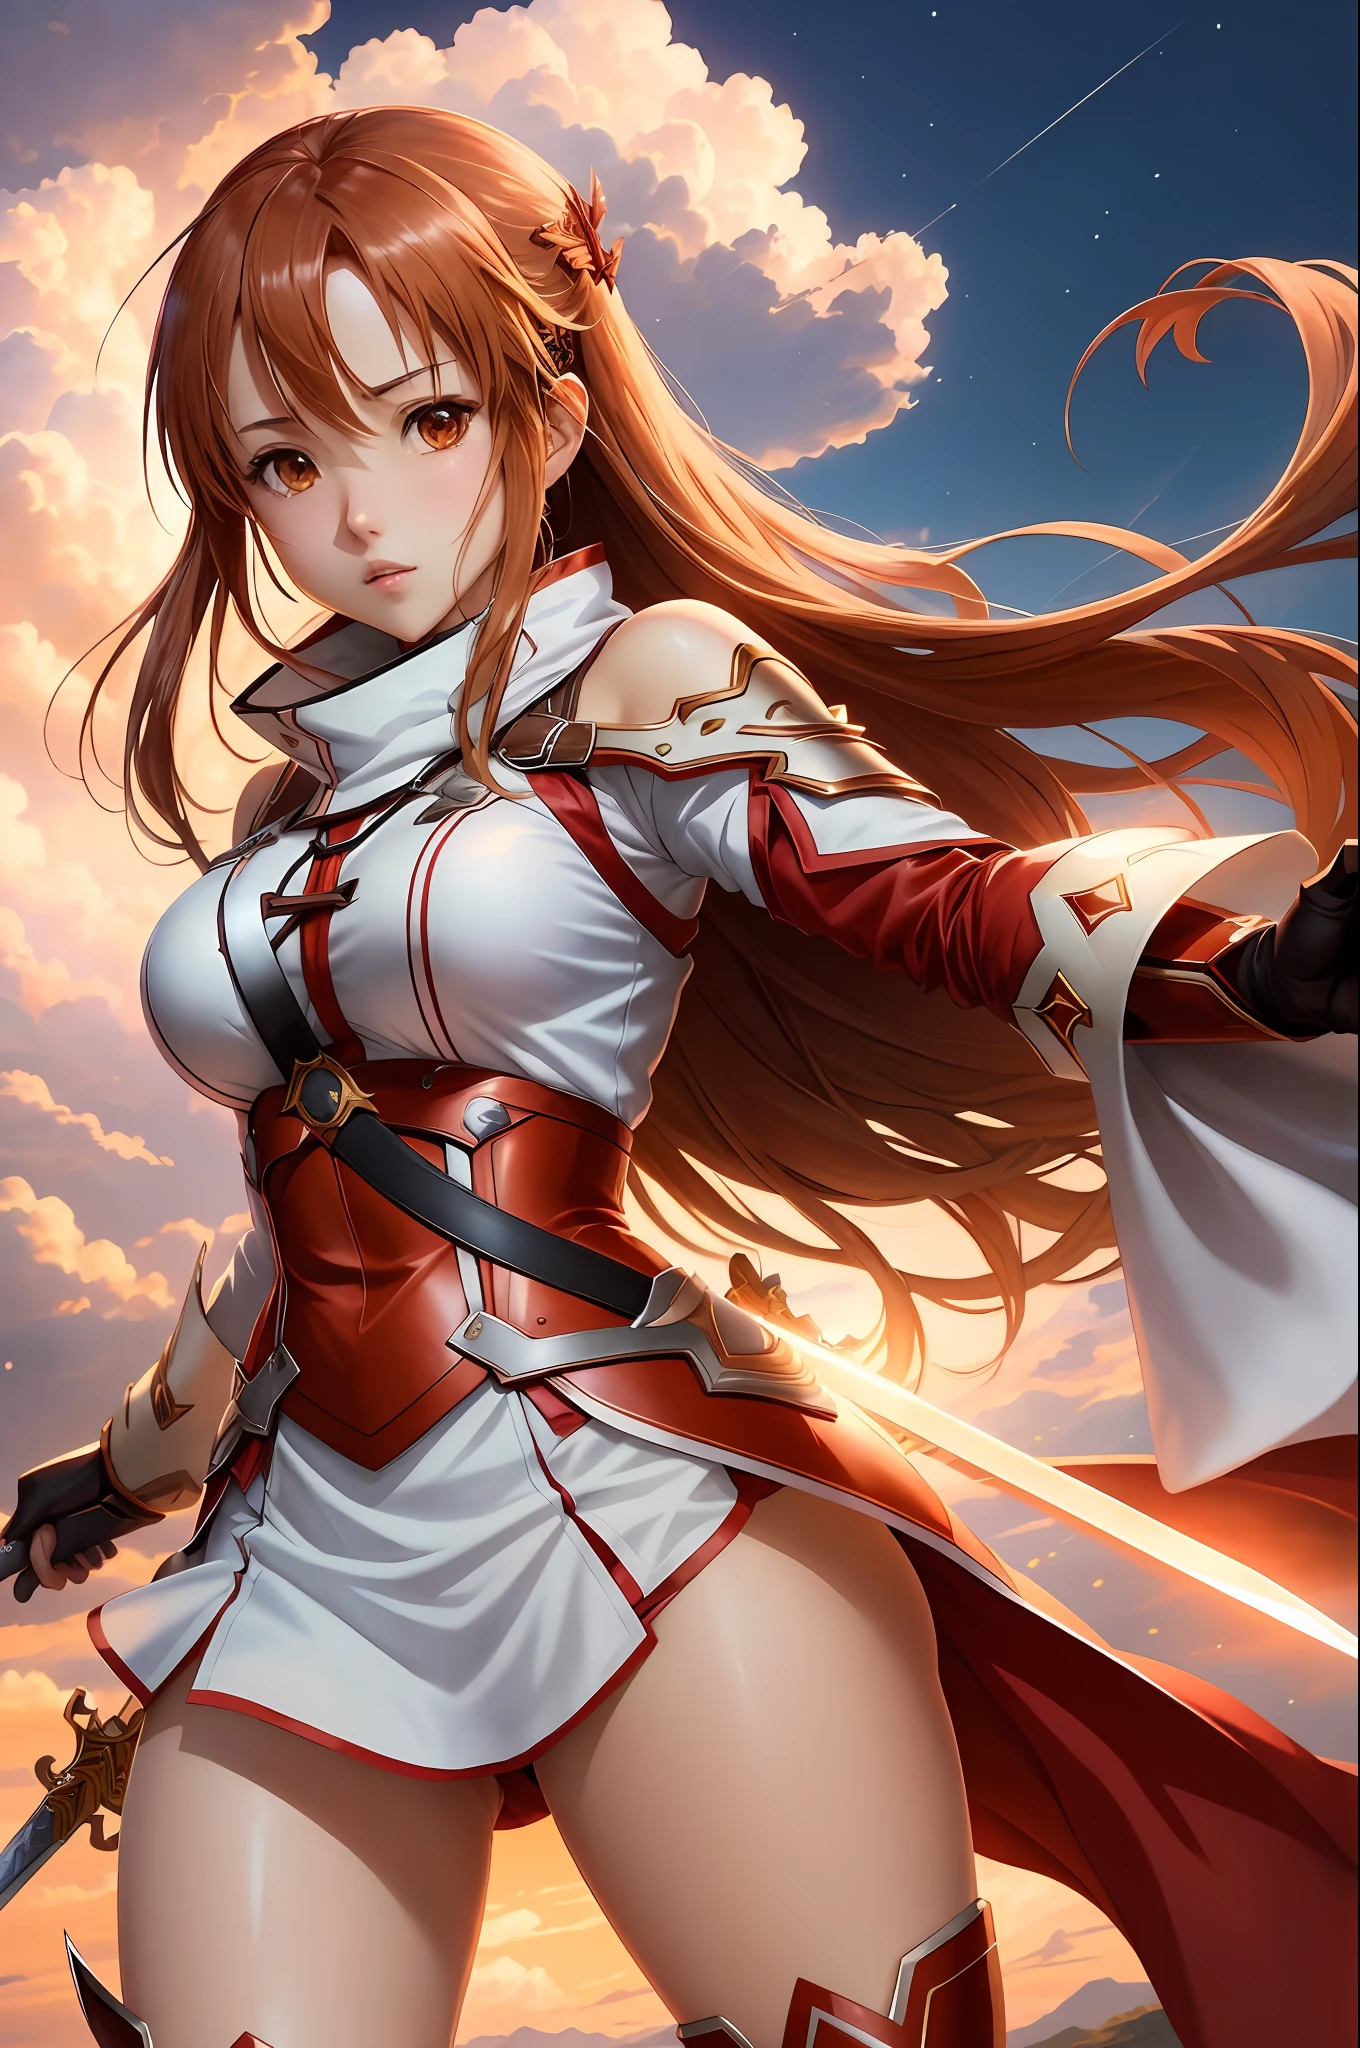 (Stil: Anime-Serie, beste Qualität), Asuna Yuuki aus Sword Art Online in einer dynamischen Pose mit ihrem Schwert, markante Gesichtszüge, und schönes Outfit. Die Szene hat eine beeindruckende visuelle Wirkung, reminiscent of the Stil of Oh! Großartig. große Brüste